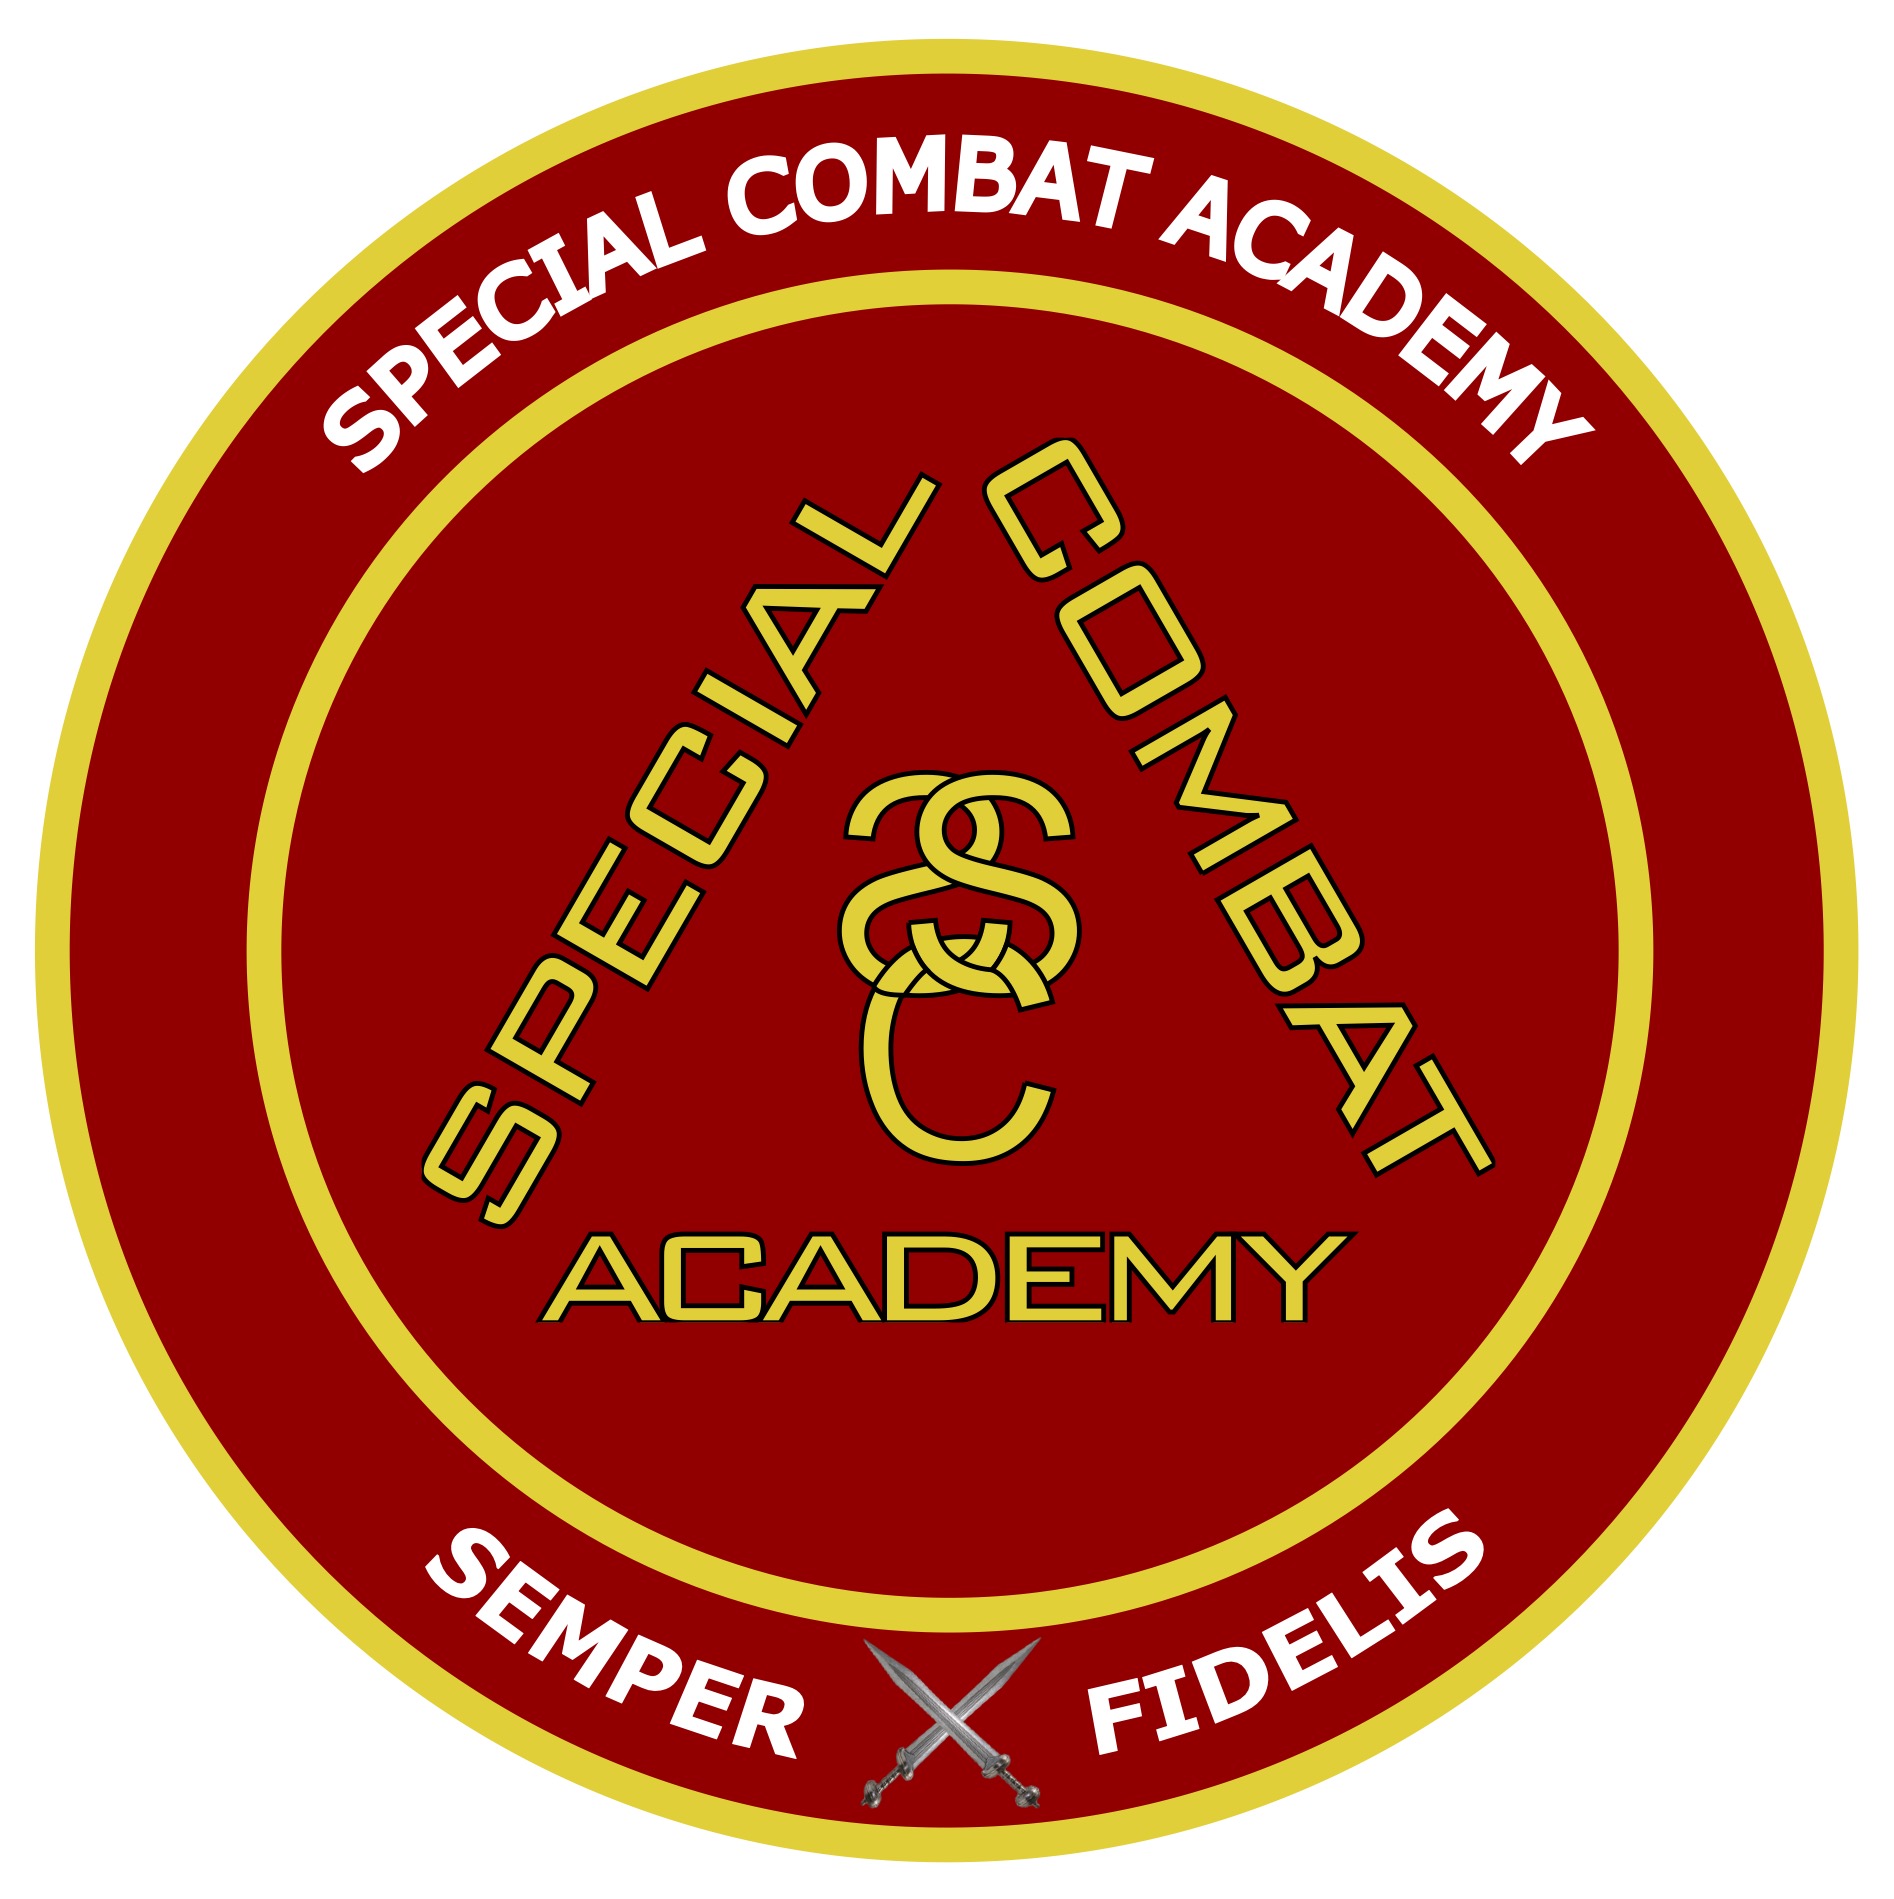 Special Combat Academy 